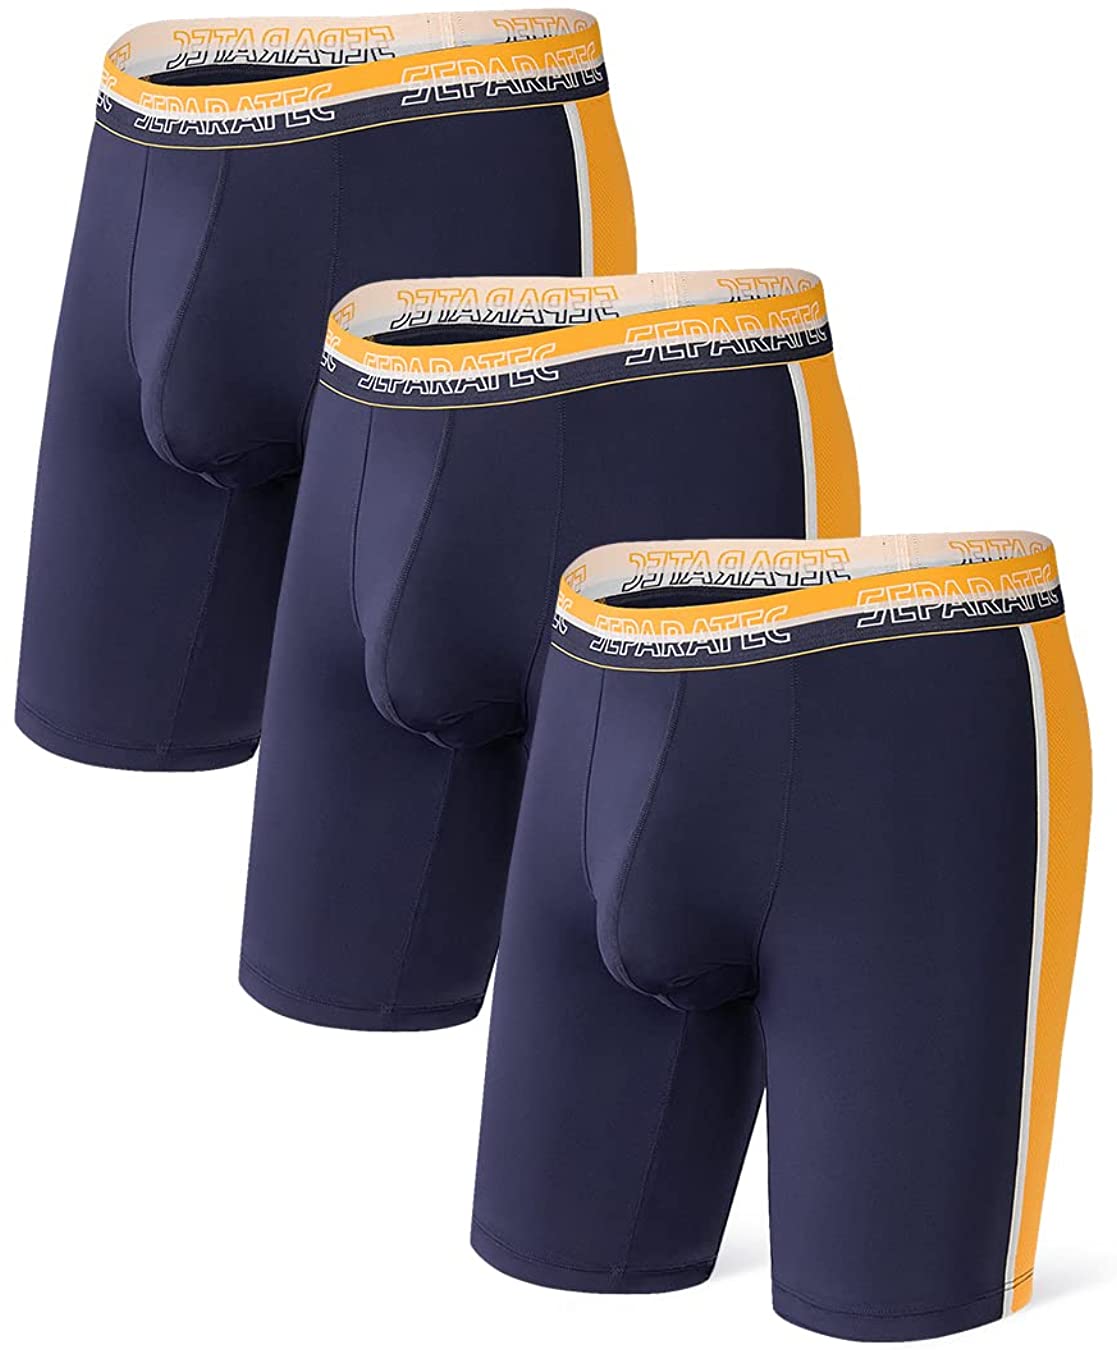 Separatec Men's Underwear Dual Pouch Sport Quick Dry Boxer Briefs